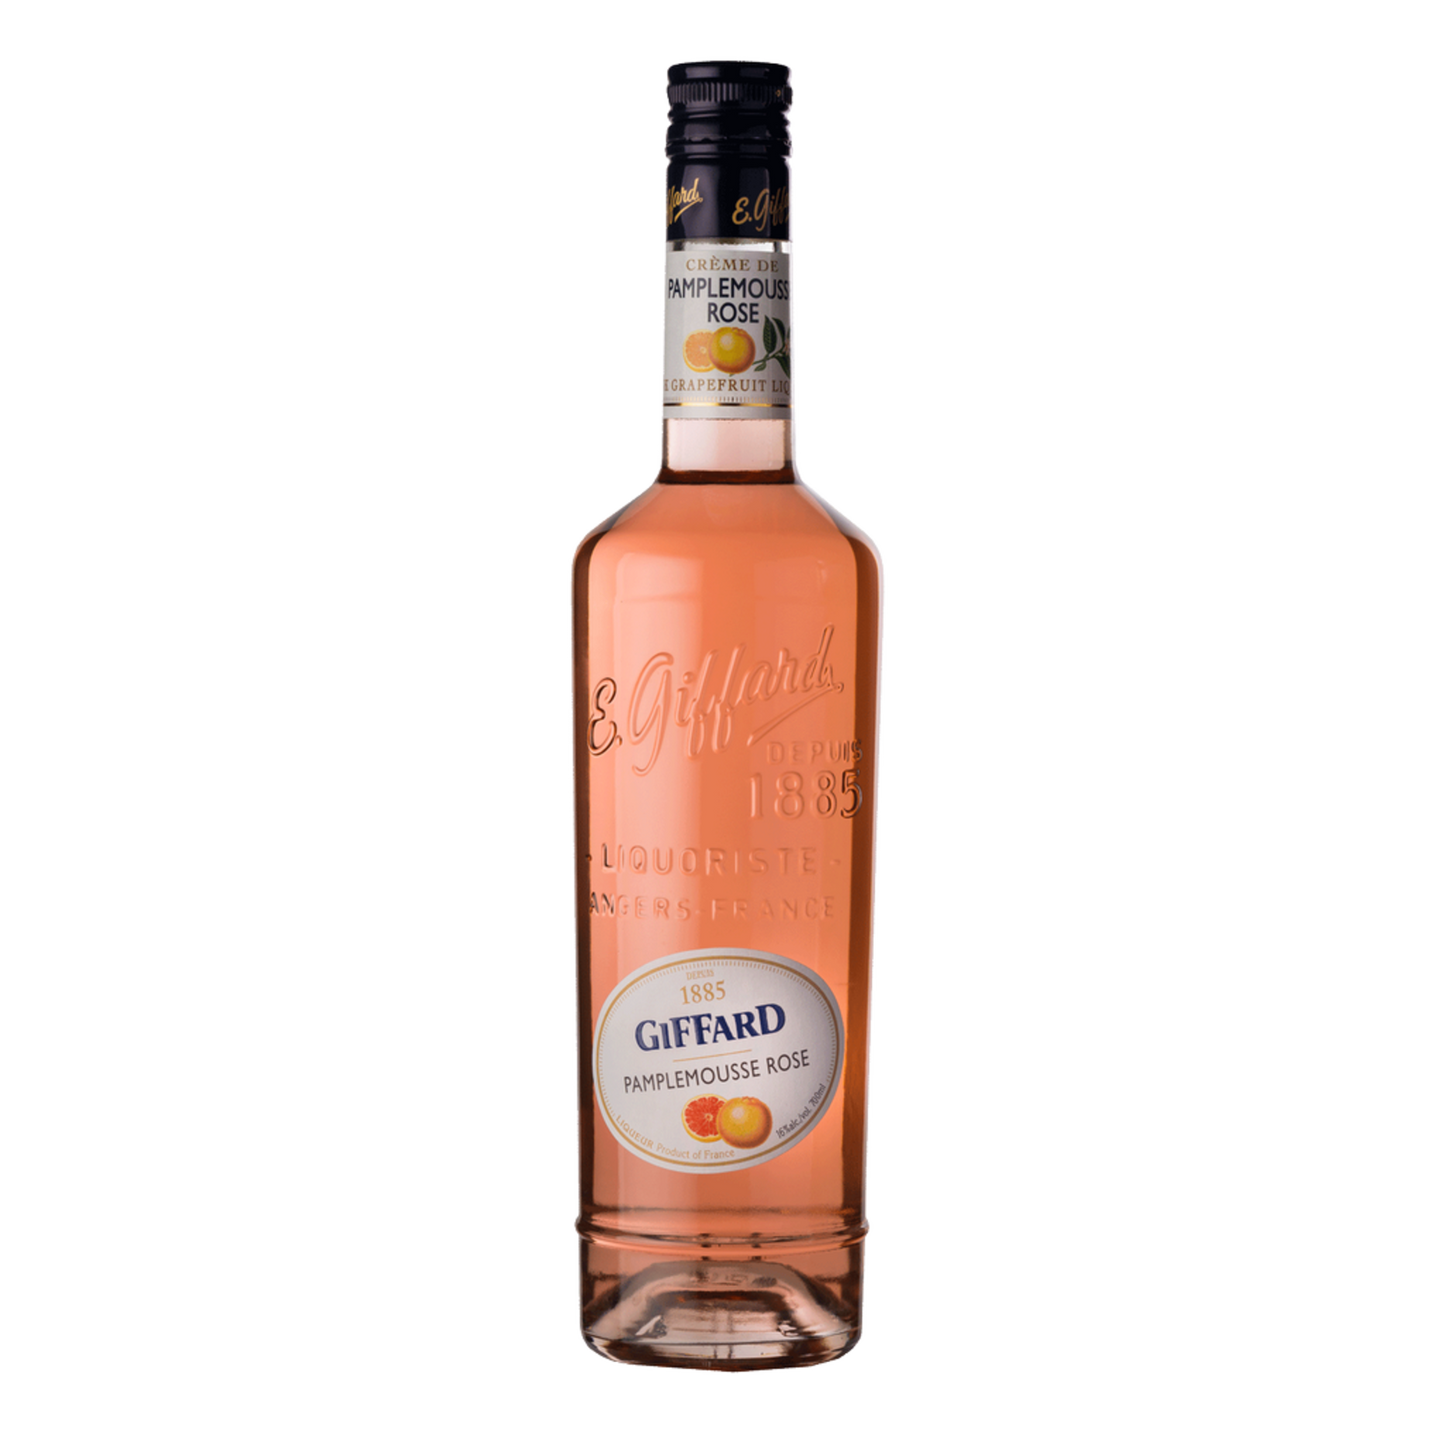 Giffard Creme De Pamplemouse Grapefruit Liqueur